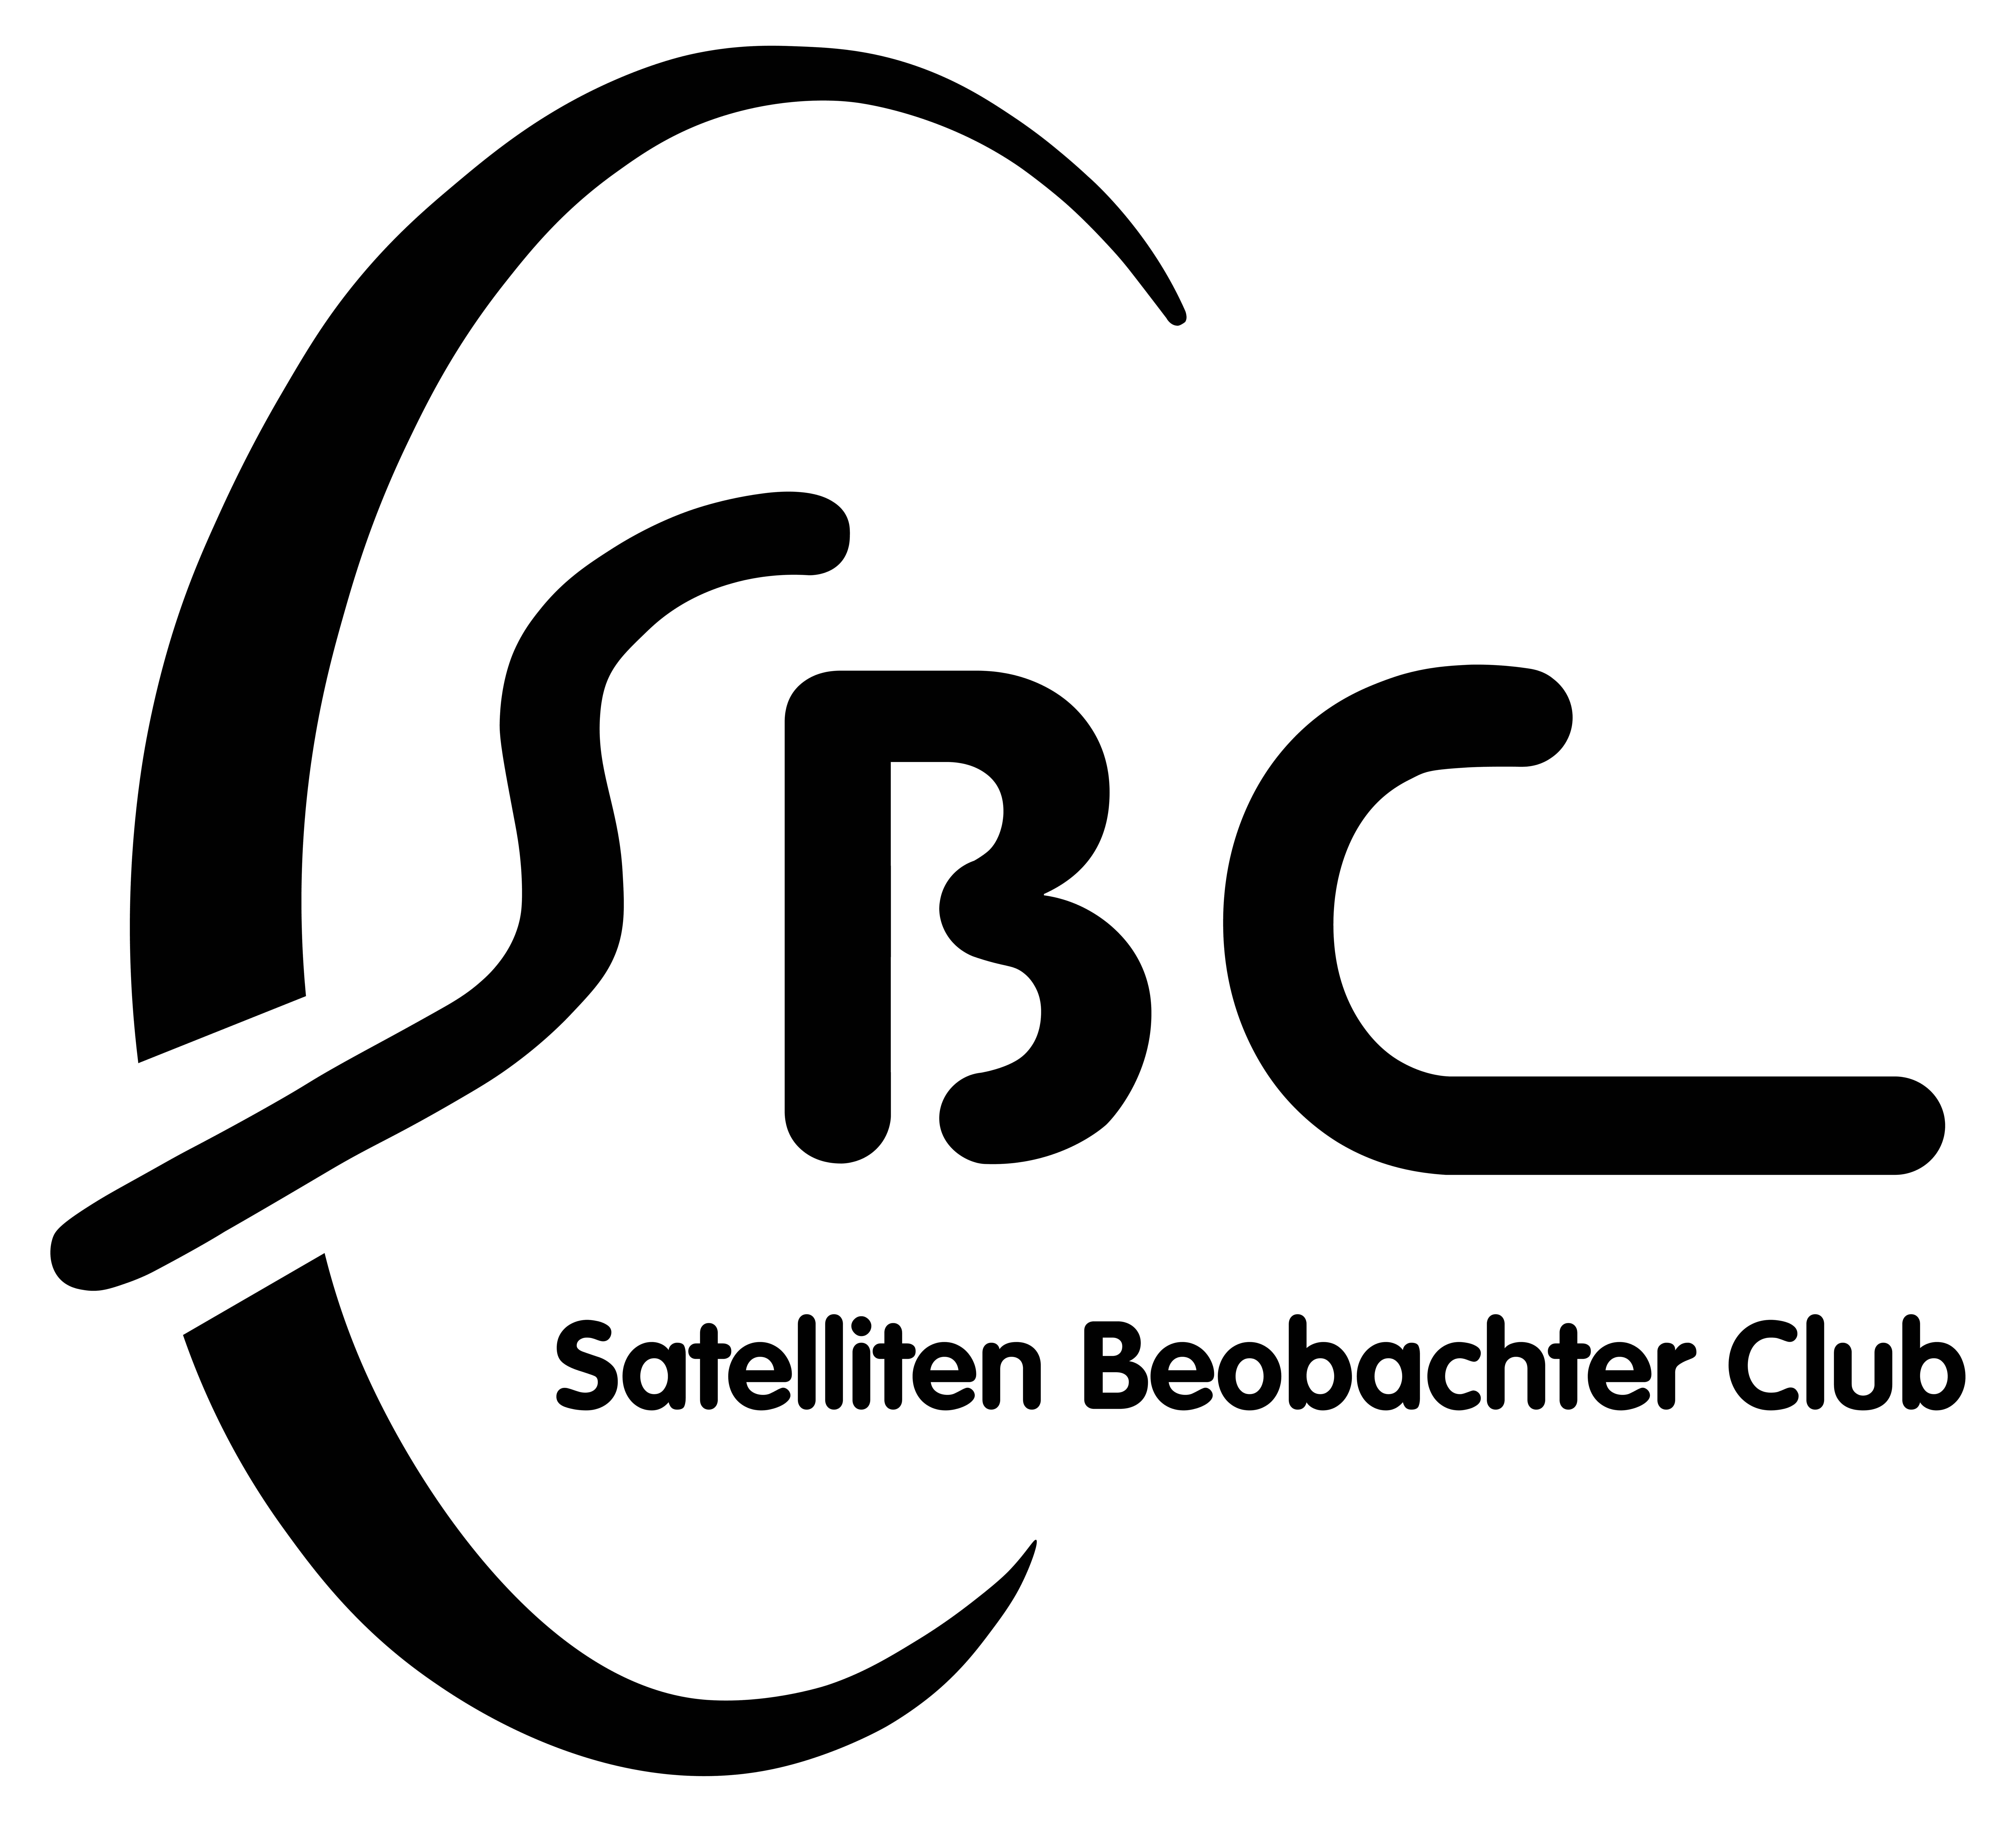 Der SBC wurde im Februar 1992 als Forum für Sat-DXer von Christian Brenner gegründet. Am 12. August 1996 wurde aus dem Satelliten Beobachter Club ein eingetragener Verein (e.V.). Damals waren wir ausschließlich eine Gruppe begeisterter und engagierter Beobachter der Satellitenszene (Sat-DXer) aus allen Berufsrichtungen und Altersgruppen – vertreten nicht nur in allen Bundesländern, sondern auch in einer Vielzahl von Ländern Europas. Uns haben sich viele Sat-DXer angeschlossen. Von Anfang an wurde mit der deutschen Vertretung von Eutelsat (Jürgen R. Grobbin) zusammengearbeitet, so dass jährlich ein Mitglied („SBC-ler des Jahres“) zu Eutelsat fliegen konnte. Aber auch mit Astra Deutschland gab es eine gelungene Kooperation. Parallel haben wir den Faxpolling-Dienst (Fax-Abrufdienst) unterstützt und mit Daten zur Belegung der Satelliten versorgt, so dass andere Satellitenzuschauer und Fachhändler immer auf dem neuesten Stand waren. Internet gab es in der heutigen Form noch nicht. Interessant ist dabei ein ausführlicher Bericht im „stern„ von 1994 über einen Sat-DXer.